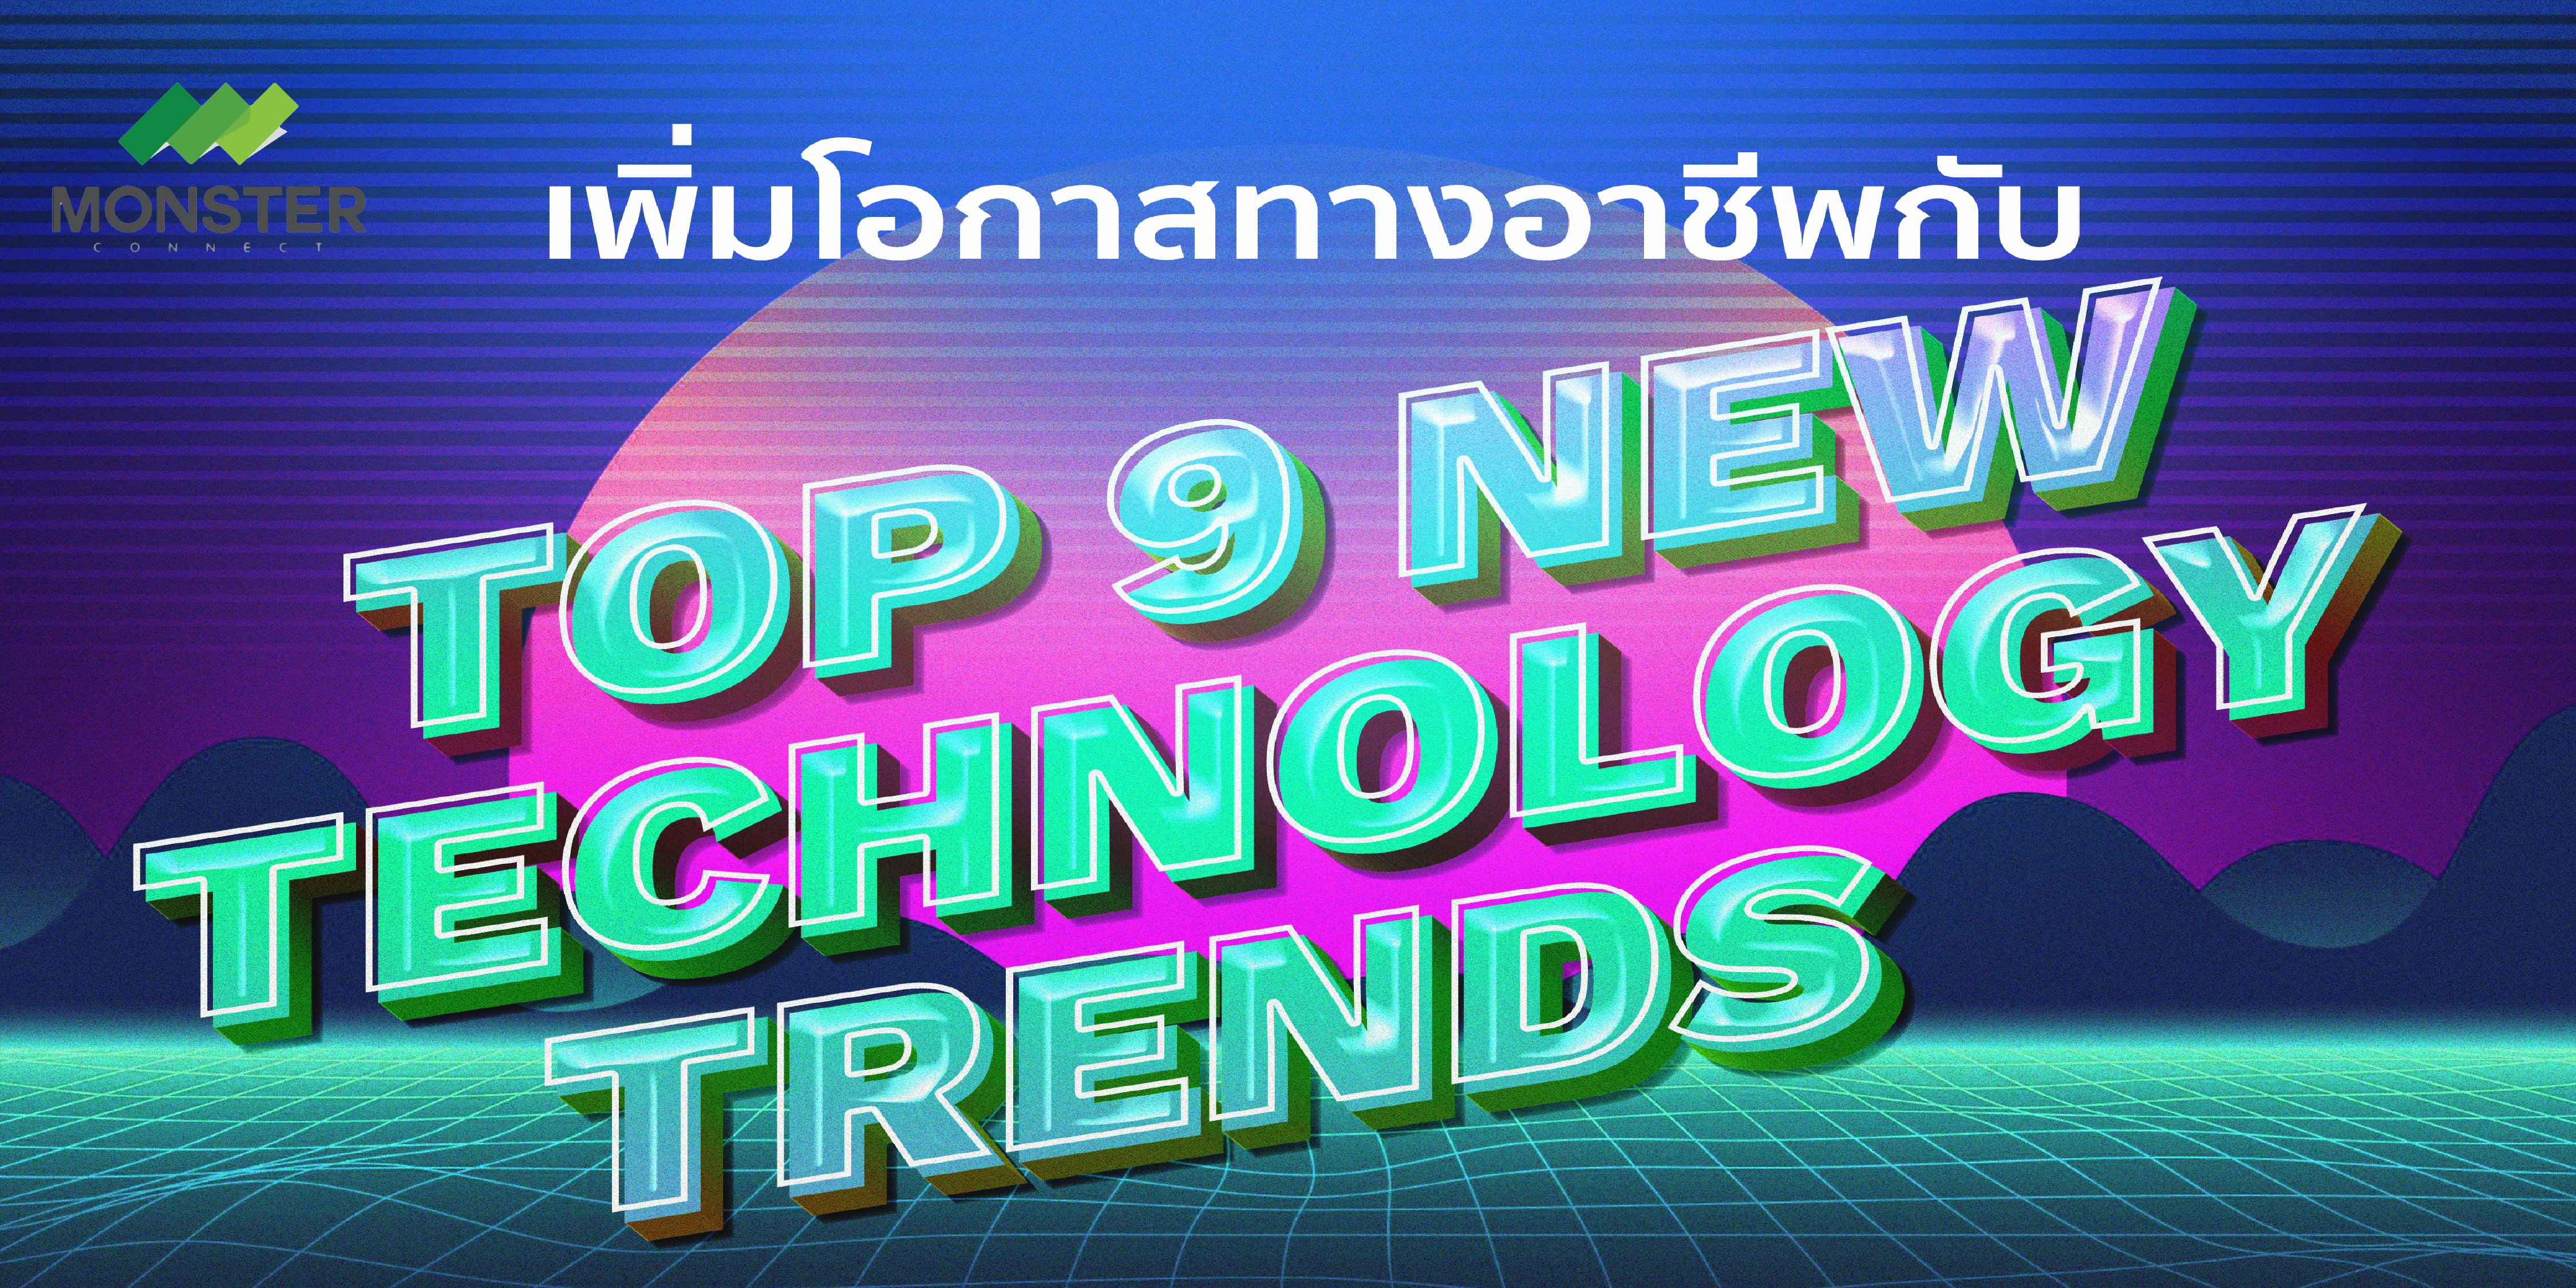 เพิ่มโอกาสทางอาชีพกับ Top 9 New Technology Trends for 2021